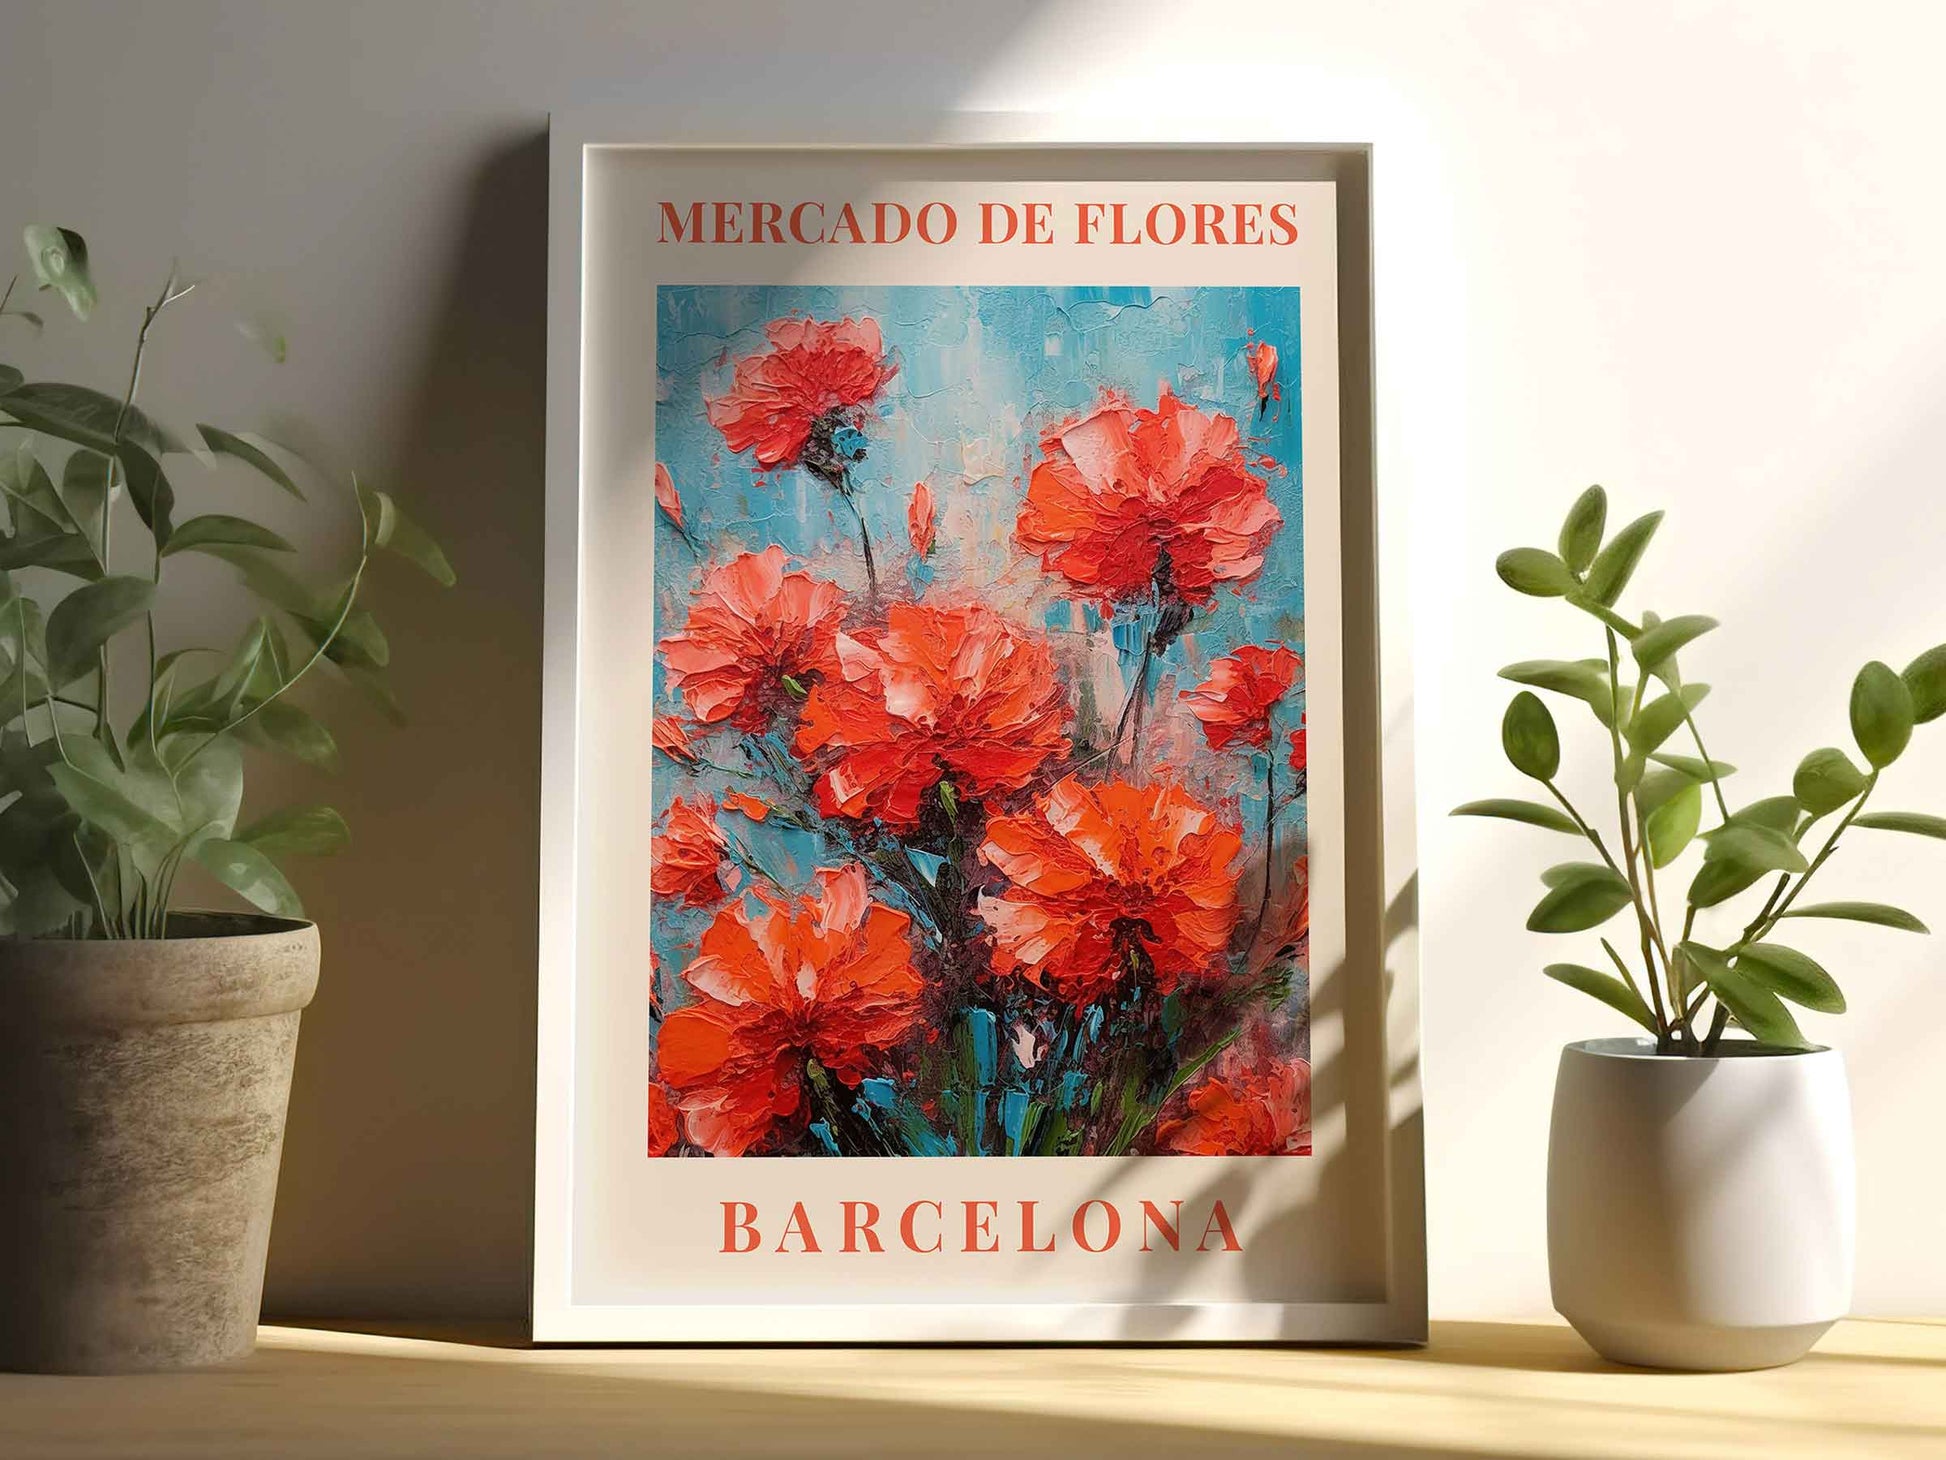 Framed Image of Barcelona Flower Market Prints Vintage Boho Botanical Painting Wall Art Posters